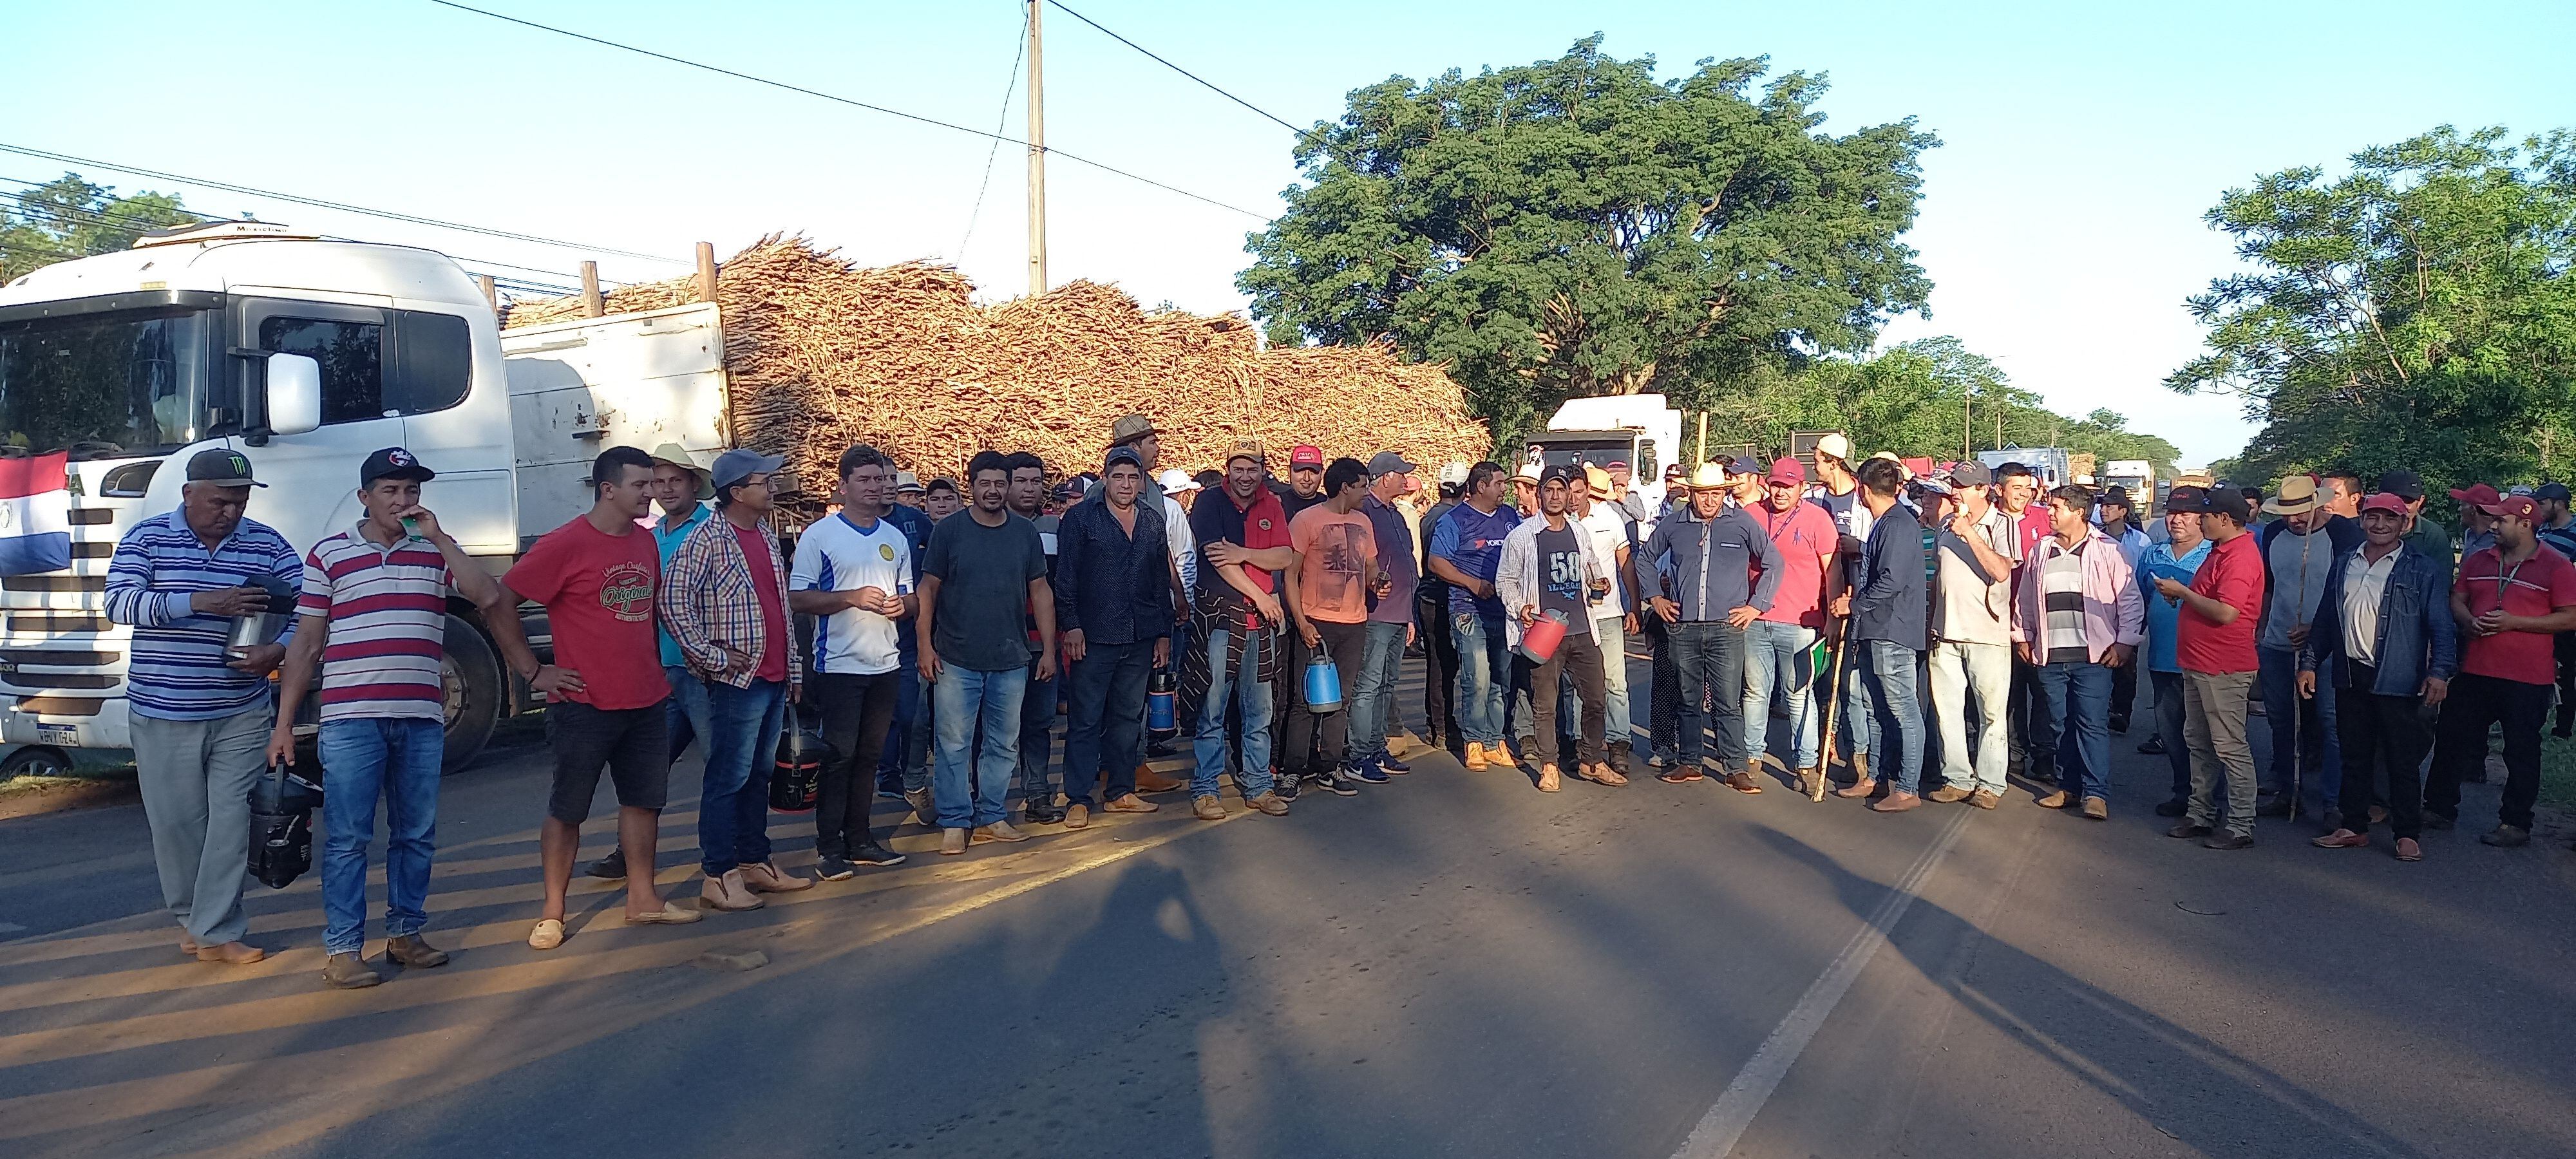 Cañicultores cerraron realizaron cierres intermitentes de la Ruta PY 02 para exigir un nuevo tren de molienda en la alcoholera de Troche.